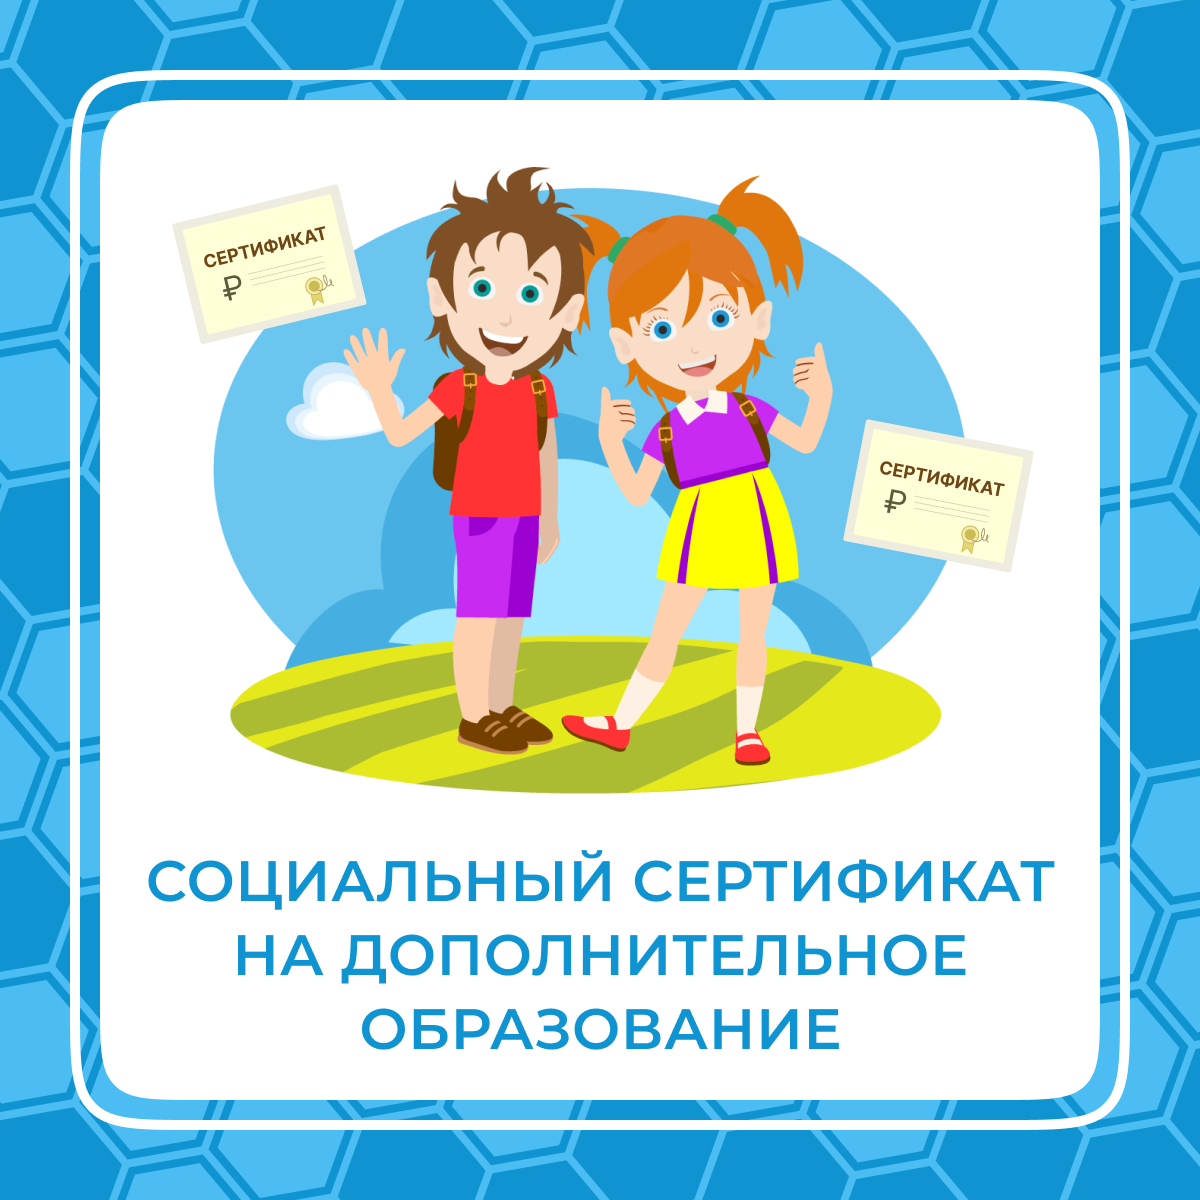 Социальный сертификат на дополнительное образование детей.